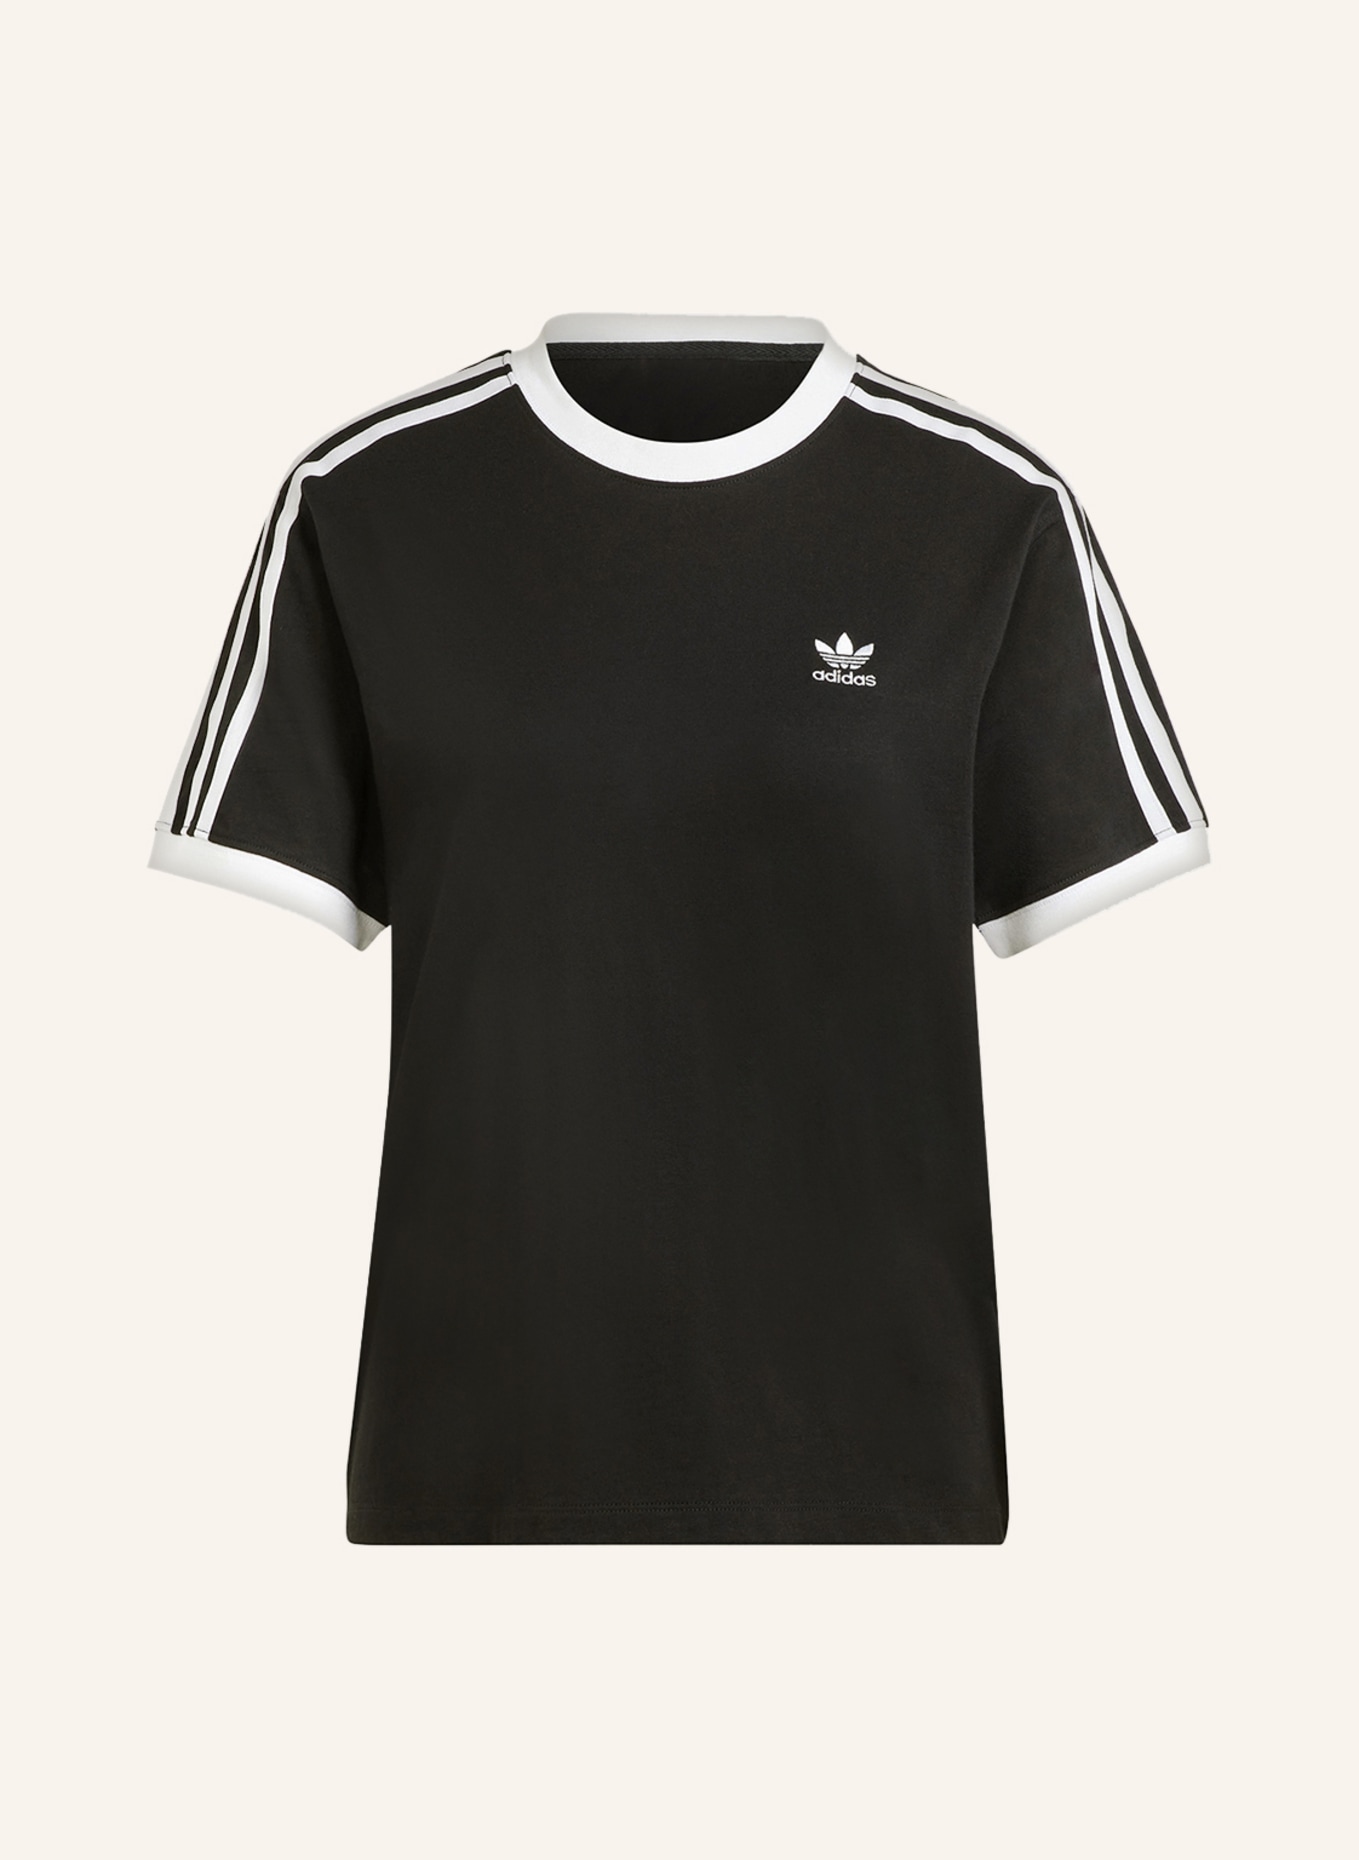 adidas Originals T-shirt ADICOLOR CLASSICS white black/ in